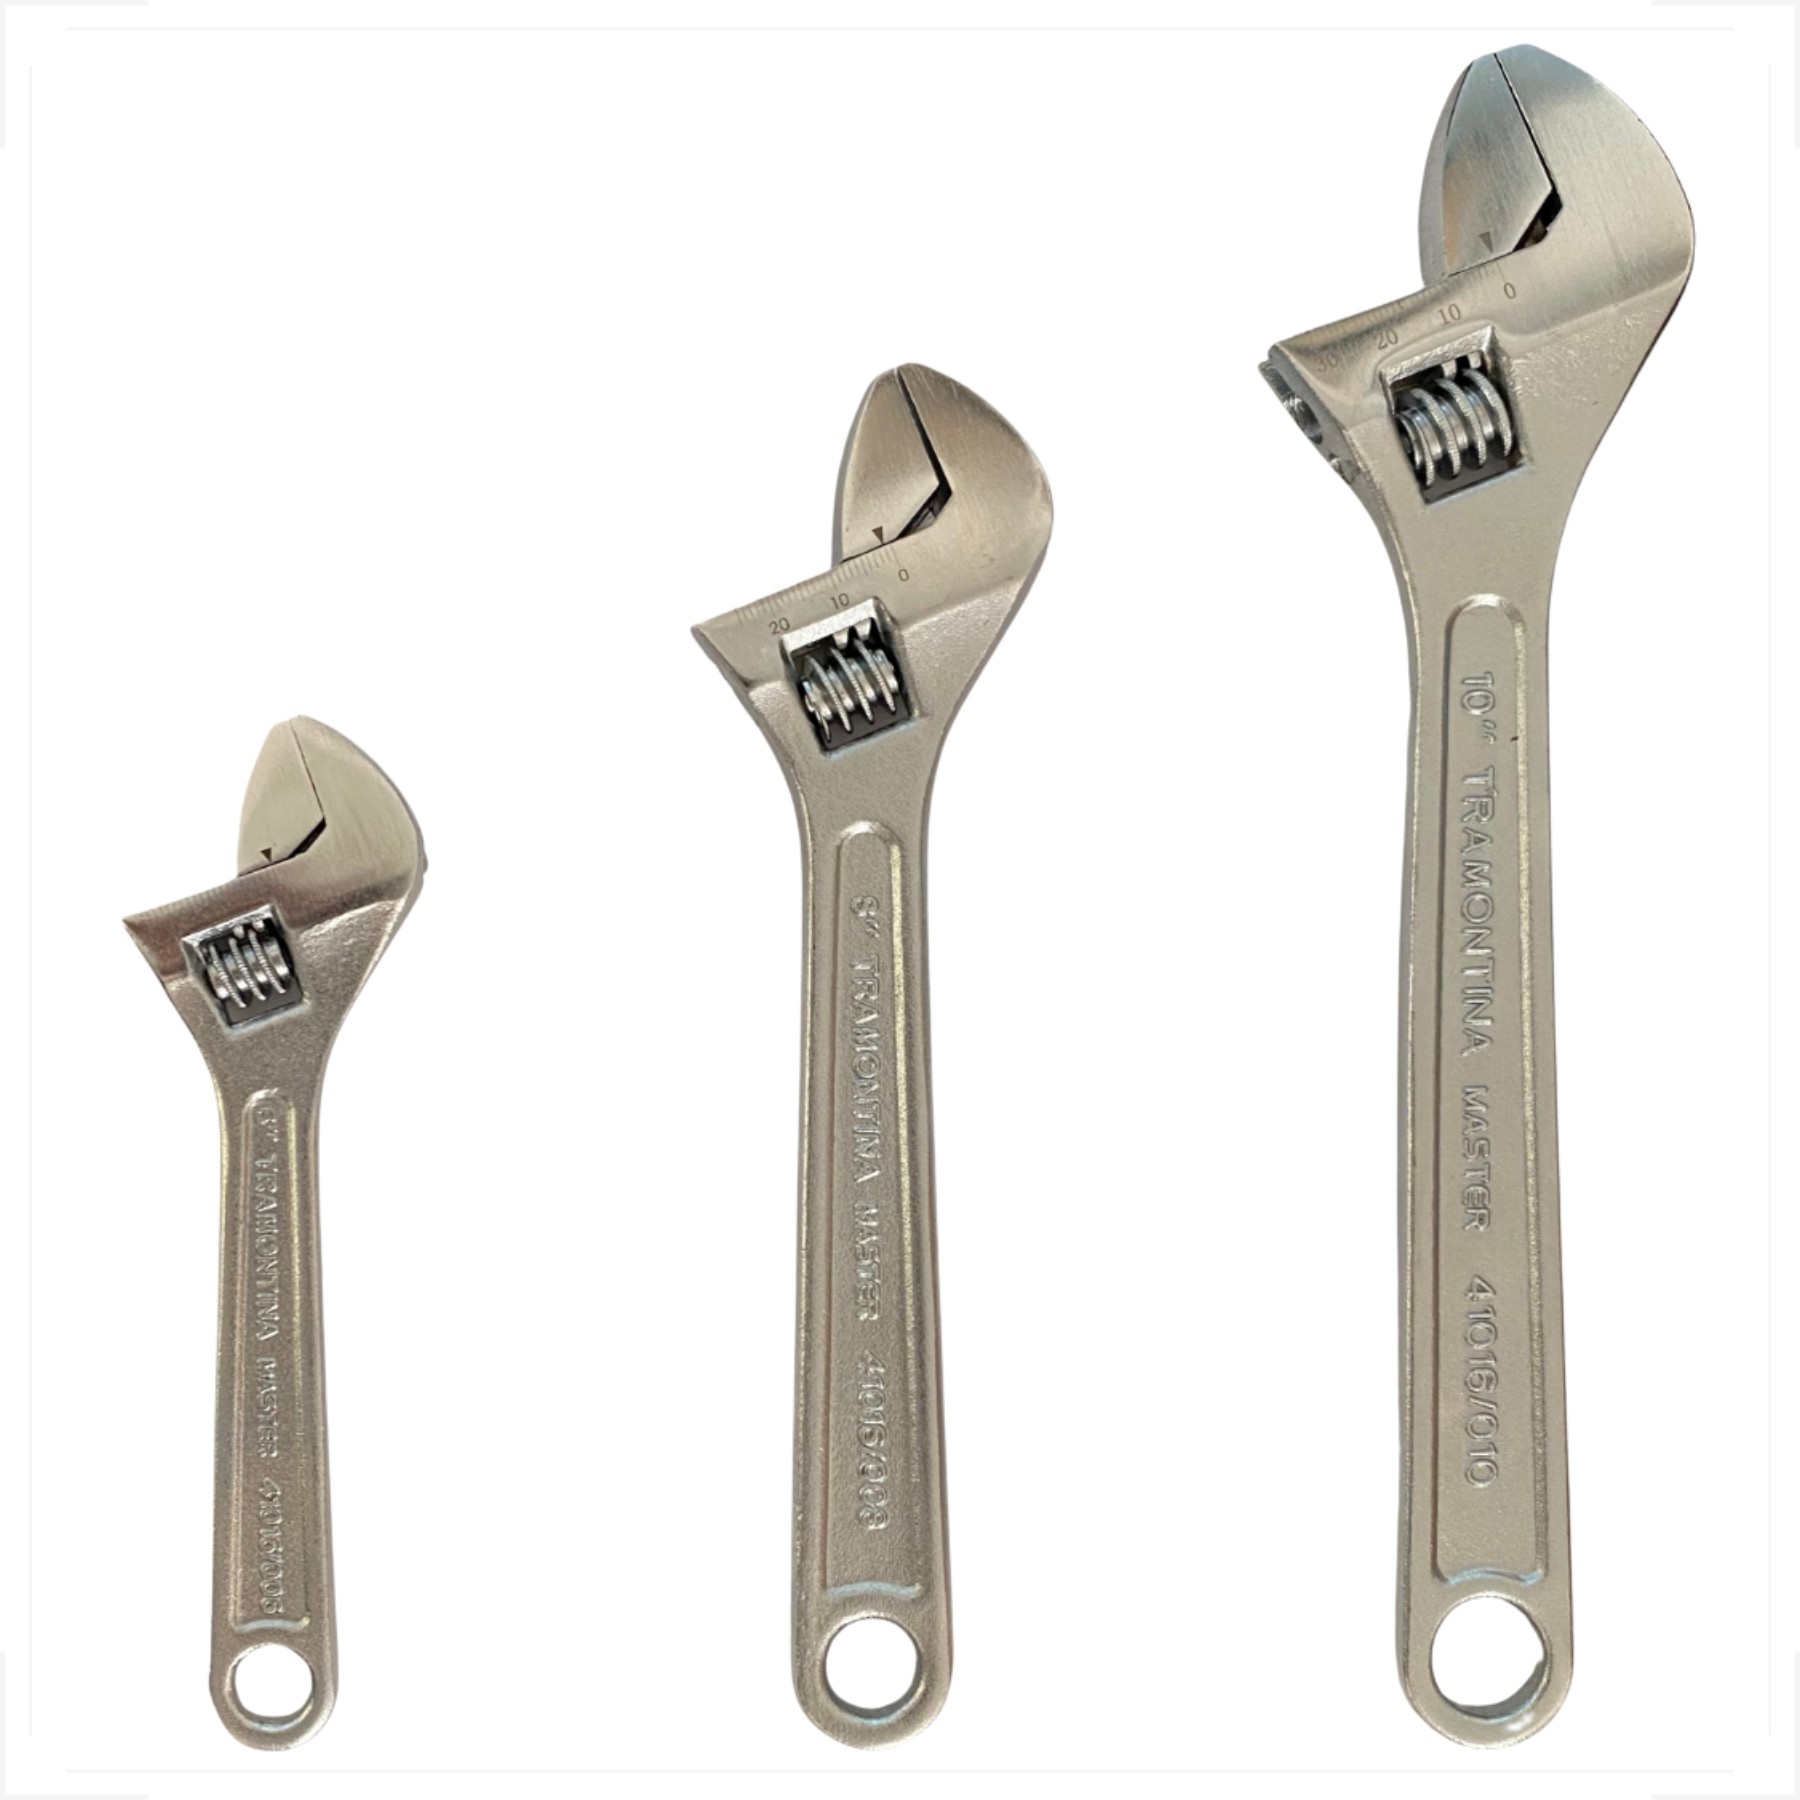 Laoa-chave inglesa portátil, grande, abertura, ajustável, 6 polegadas, 8  polegadas, 10 polegadas, 12 polegadas, ferramentas, ousehold, ferramenta de